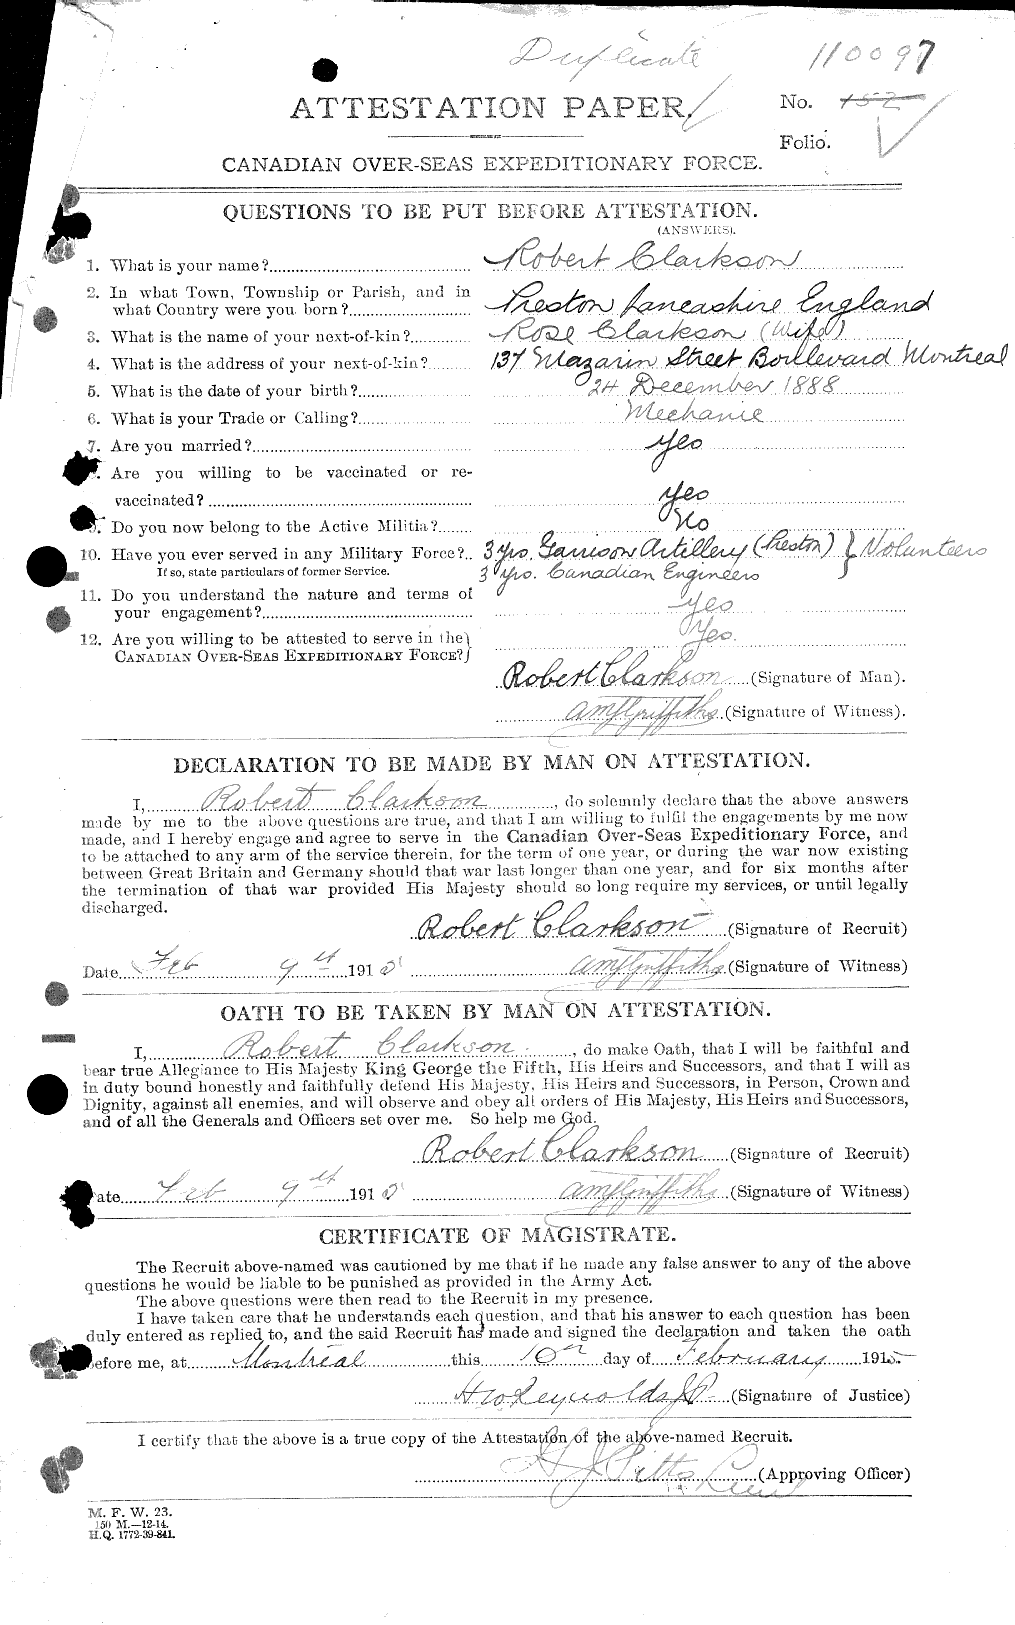 Dossiers du Personnel de la Première Guerre mondiale - CEC 019001a